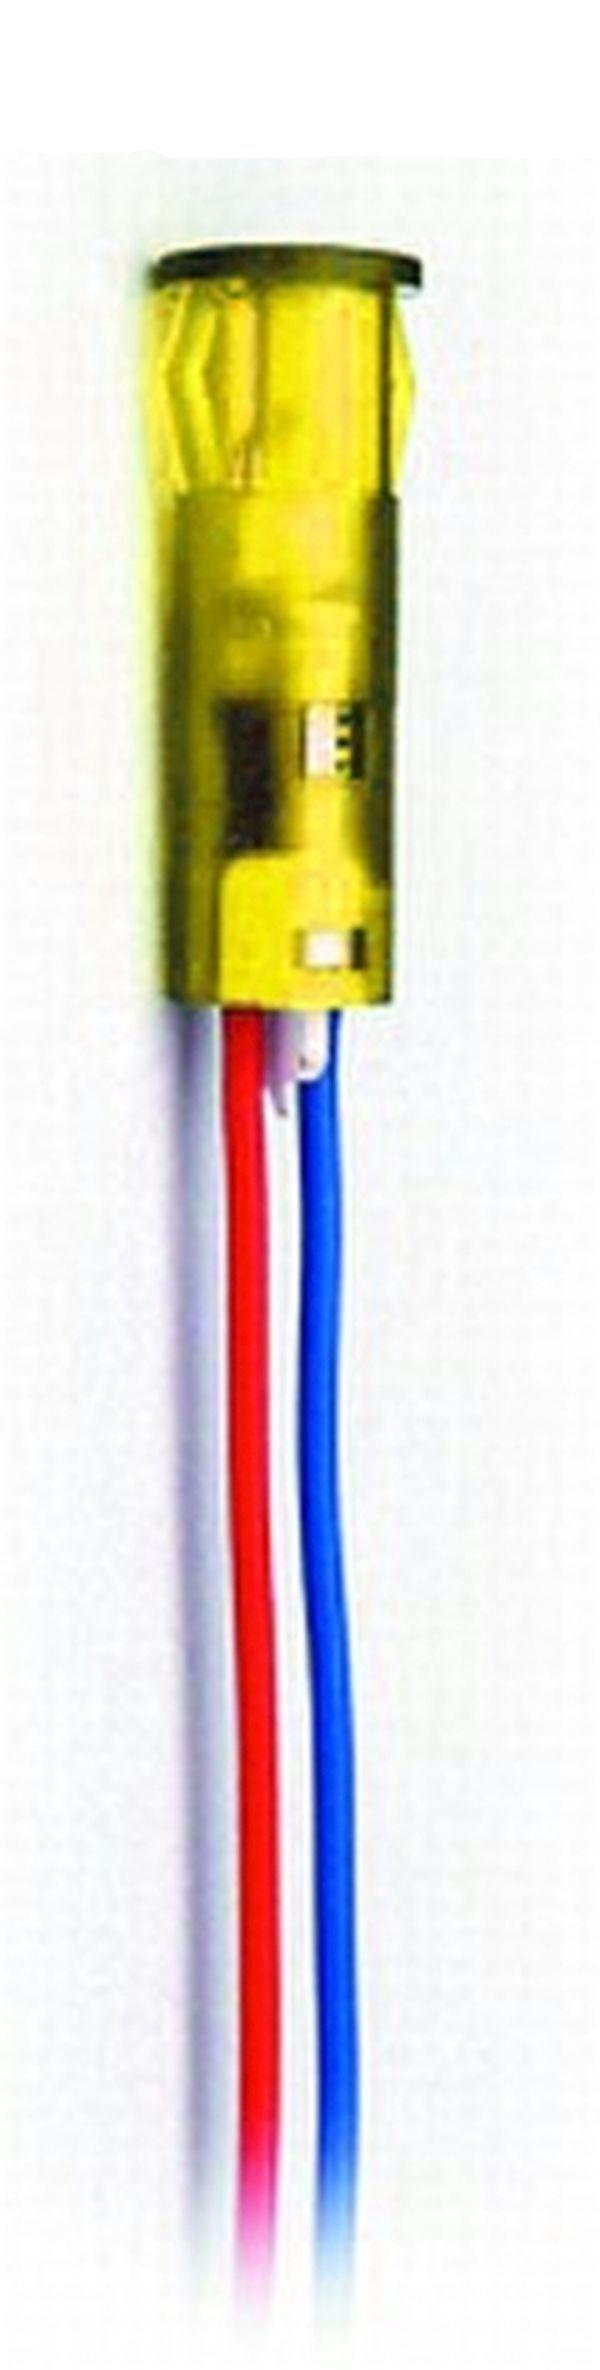 Philippi - LED light 5mm yellow for STV